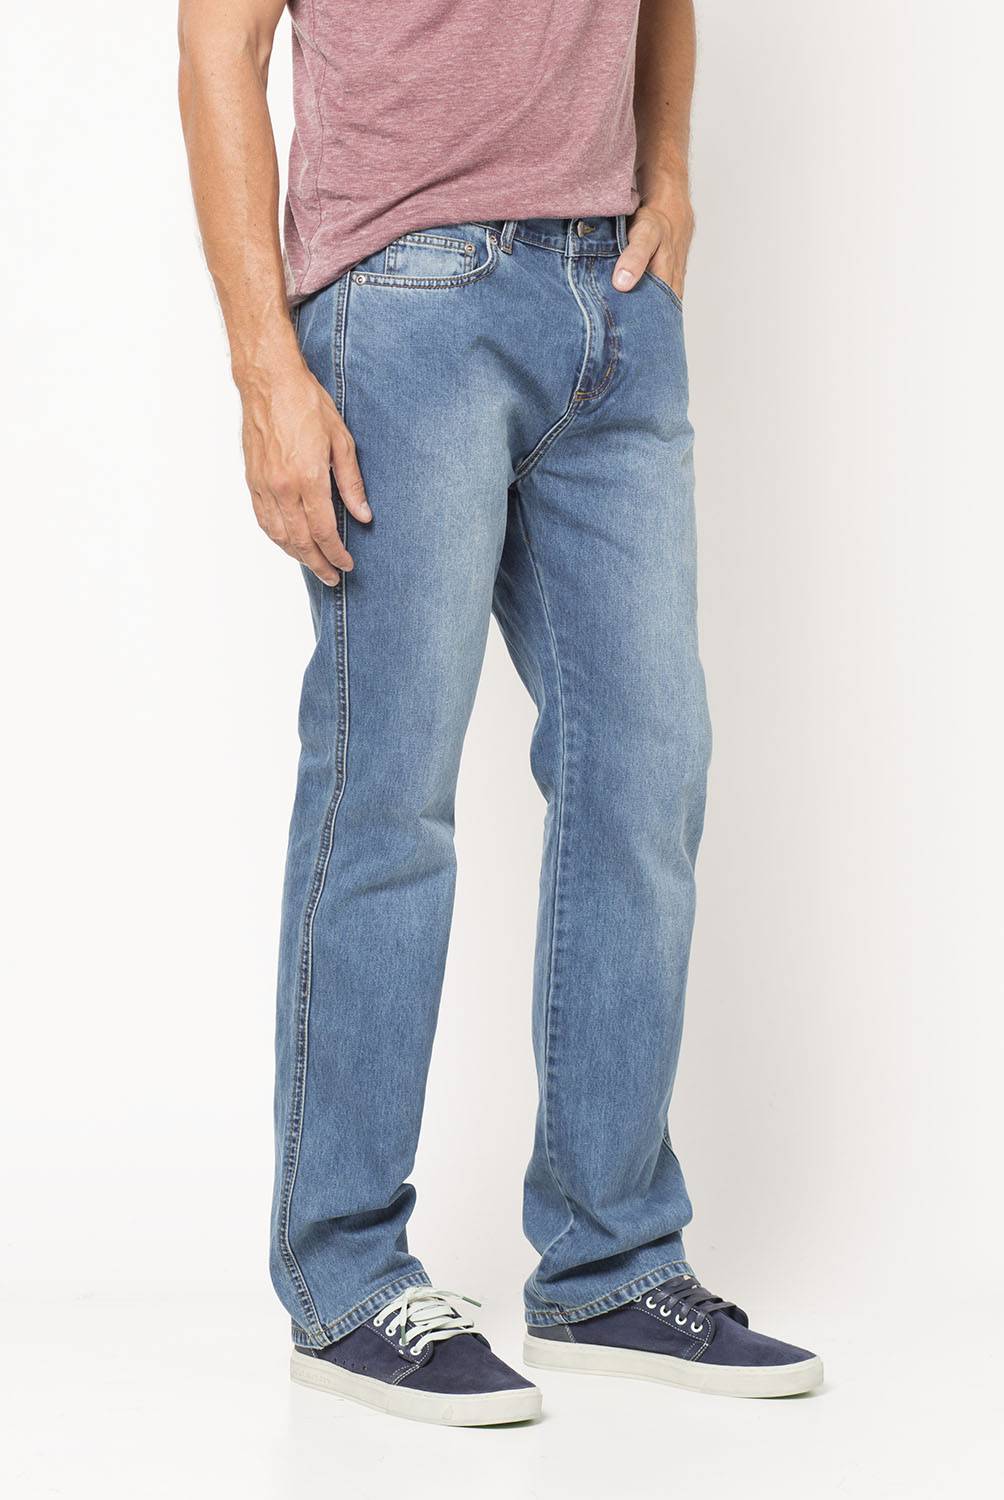 WRANGLER - Jeans Thurman Regular Fit Wrangler